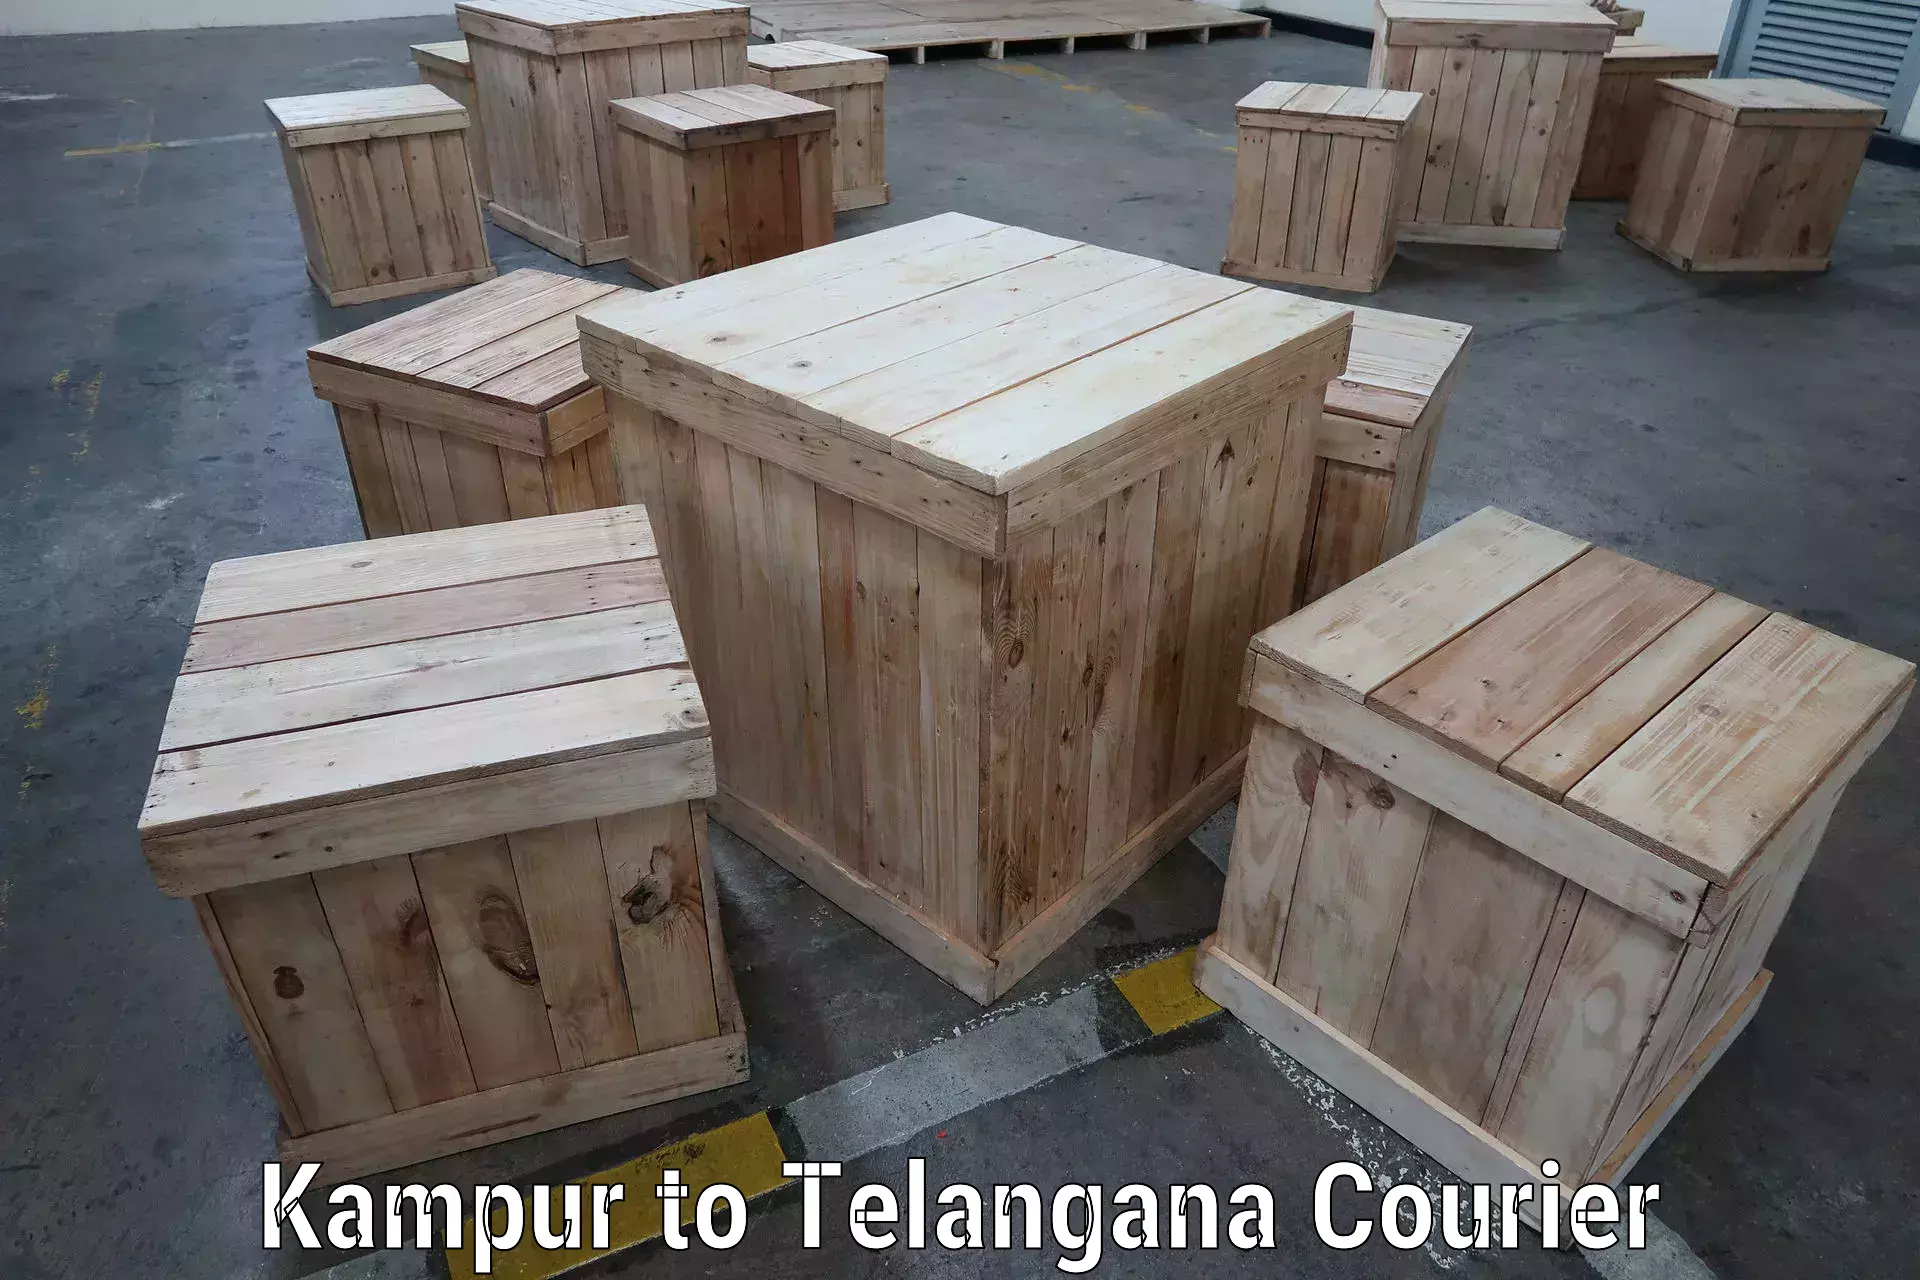 Global shipping solutions Kampur to Telangana